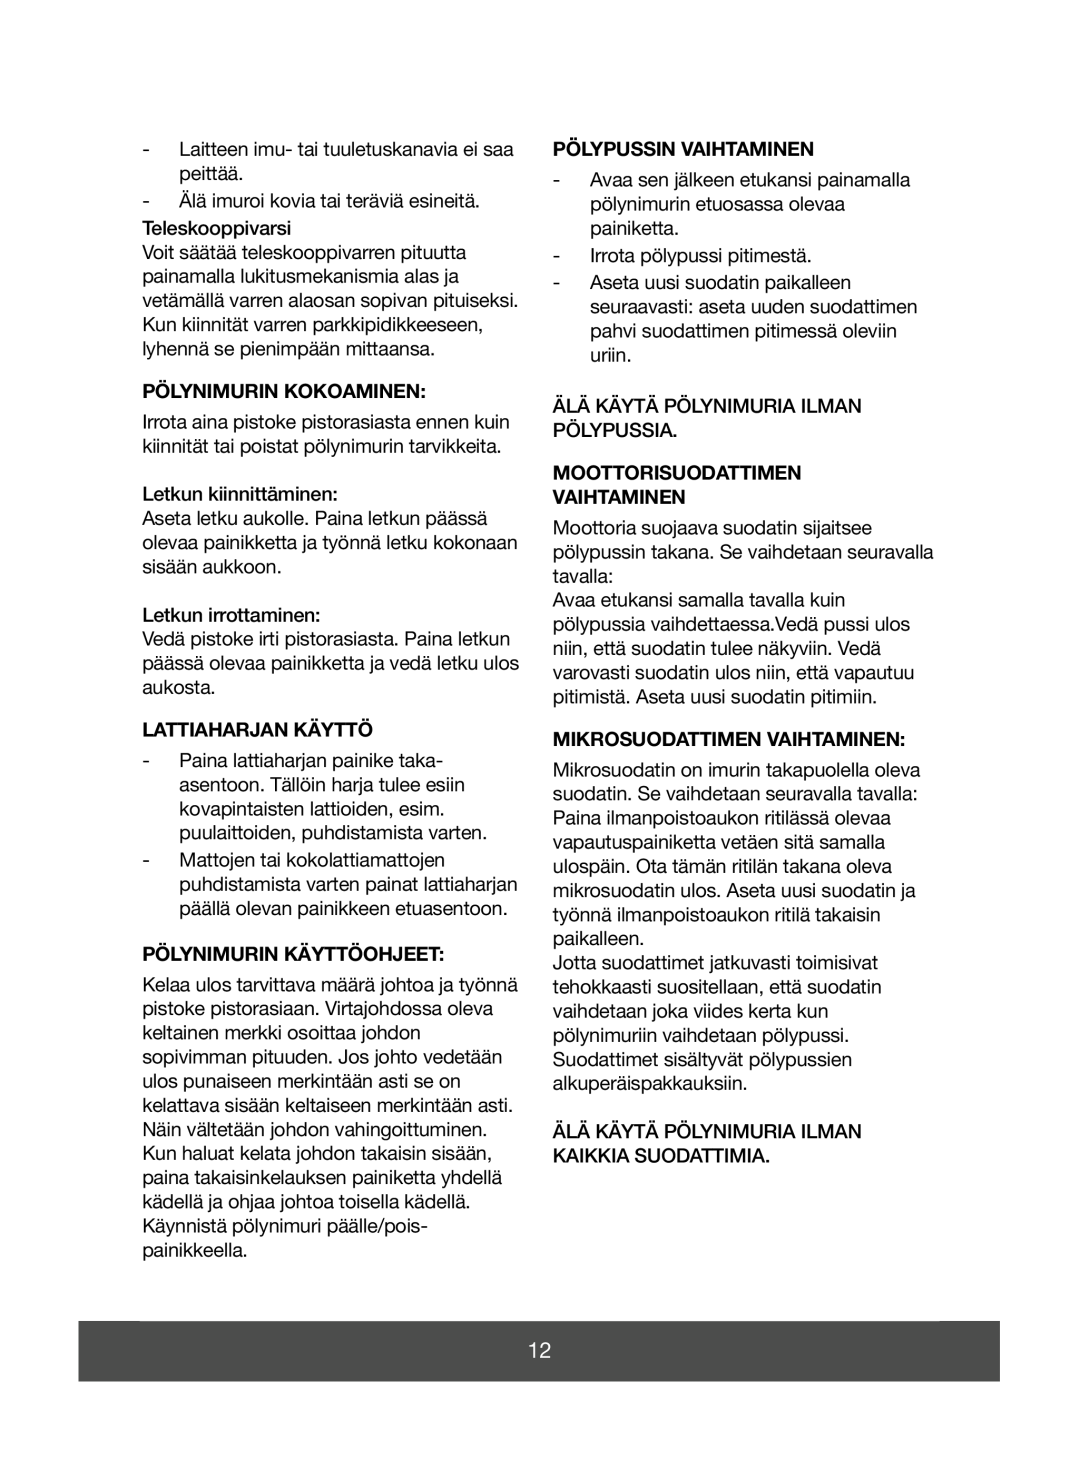 Melissa 640-070 manual Pölynimurin Kokoaminen, Lattiaharjan Käyttö, Pölynimurin Käyttöohjeet, Pölypussin Vaihtaminen 